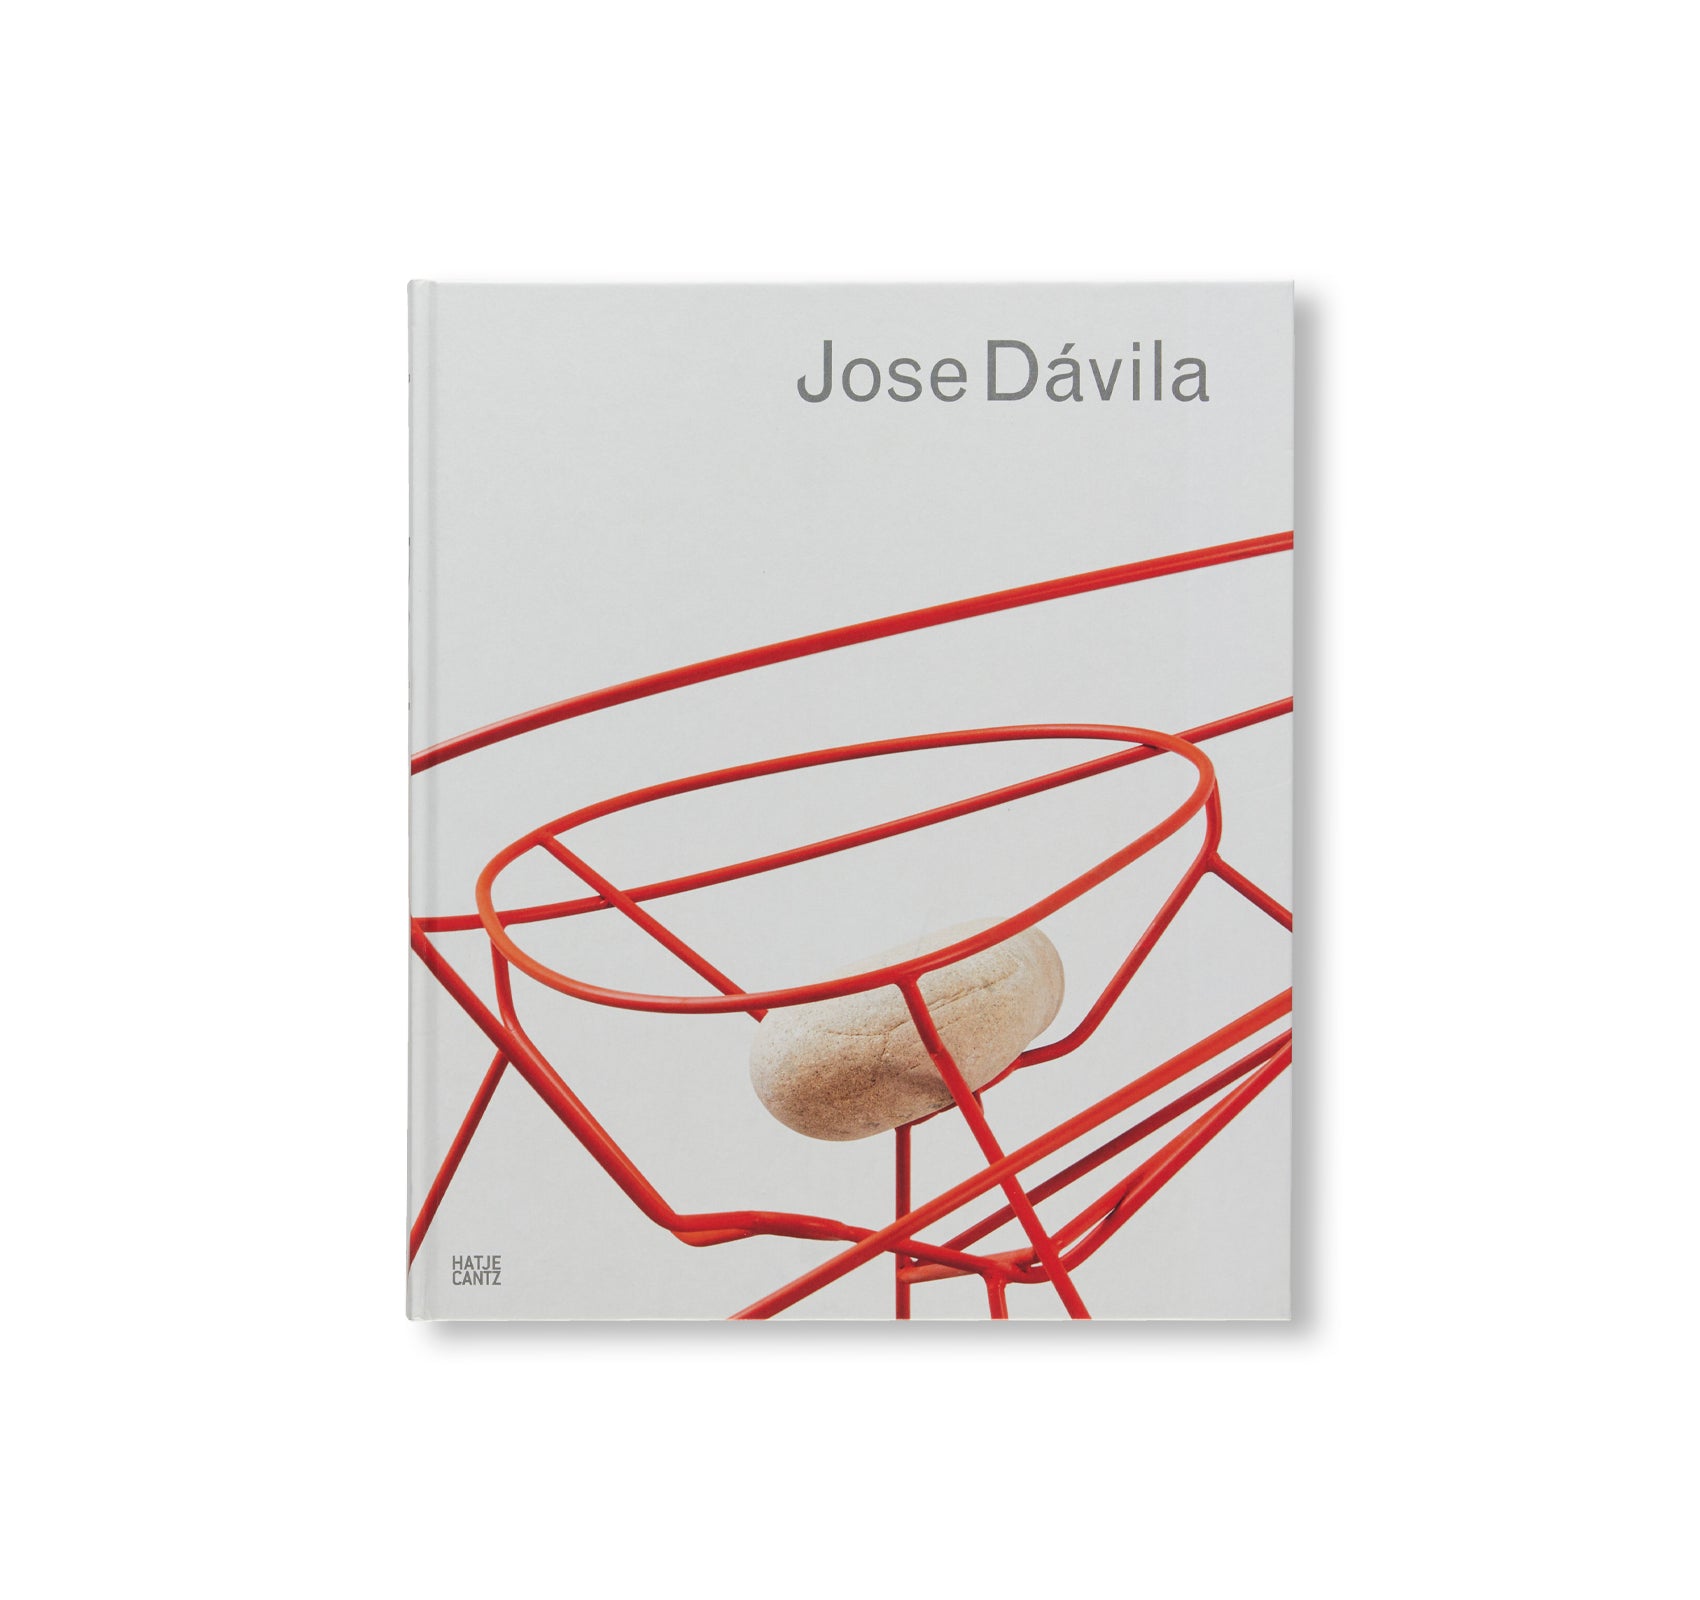 JOSE DÁVILA by Jose Dávila